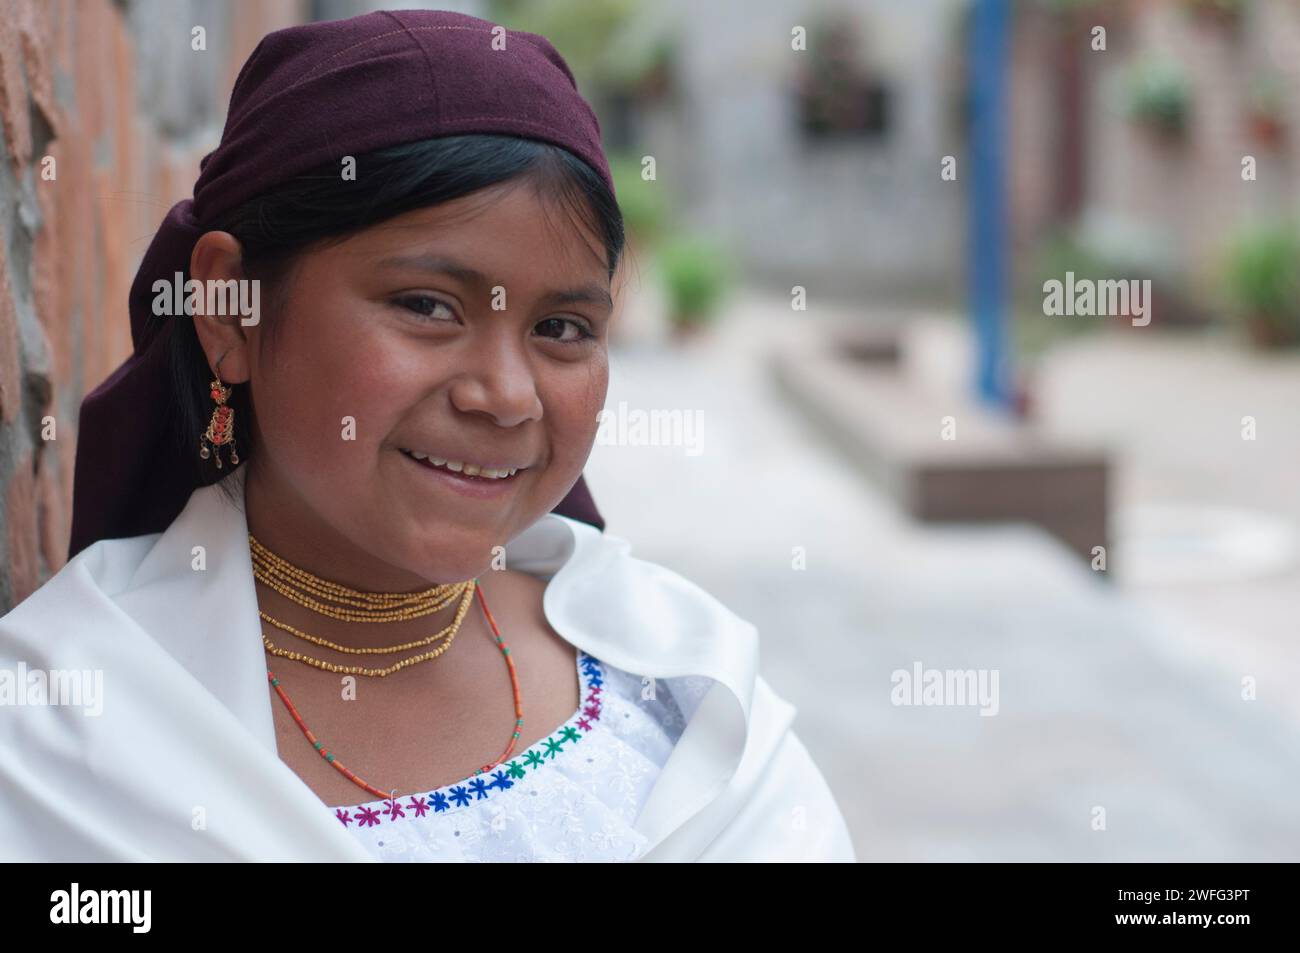 Ein junges indigenes Mädchen in traditioneller Kleidung mit Kopftuch und Schmuck lächelt warm, während es sich an eine Backsteinmauer in einem Kopfsteinpflaster lehnt Stockfoto